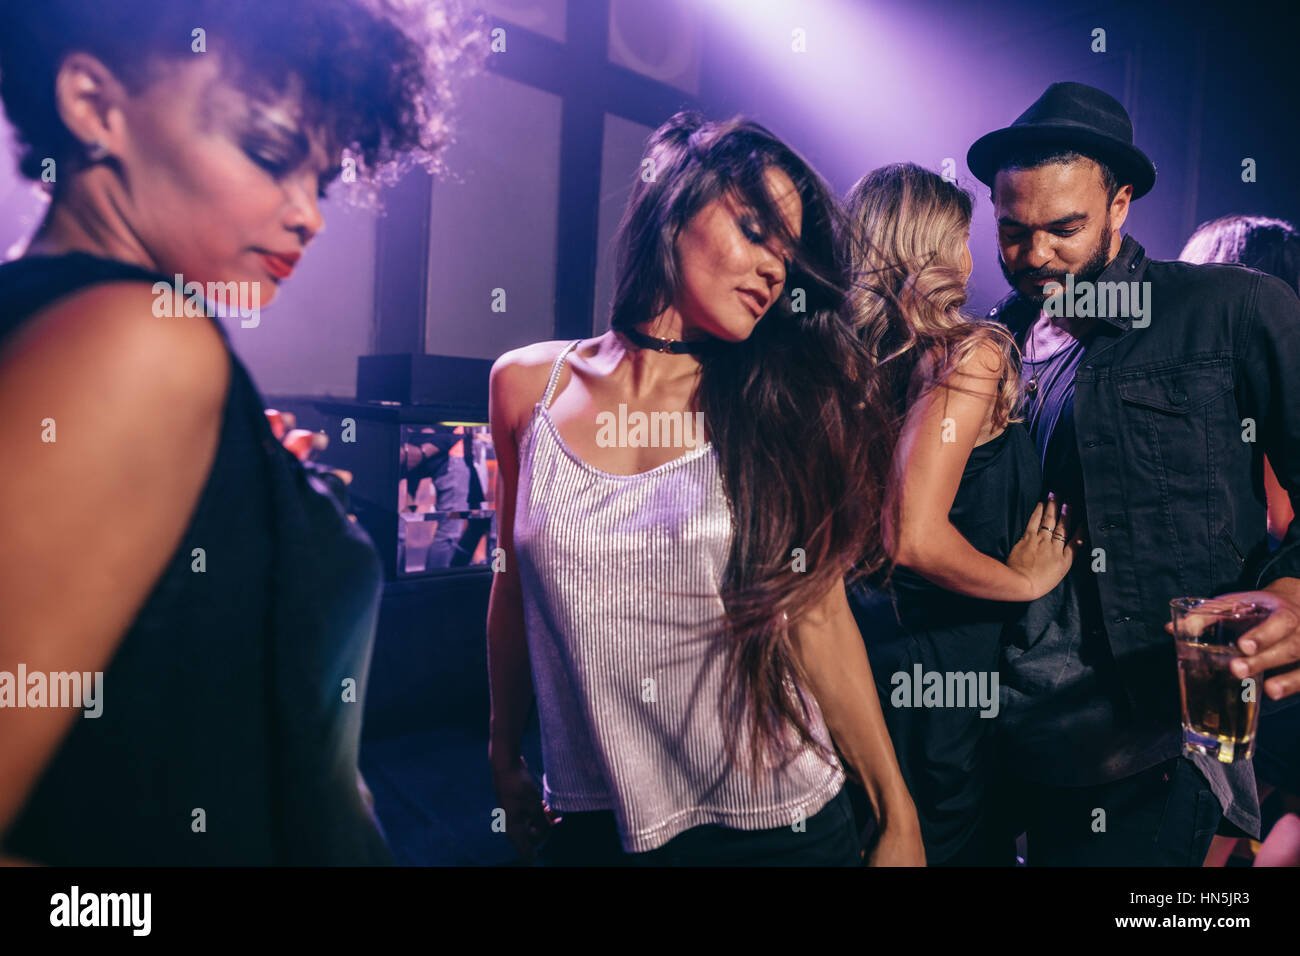 Young woman dancing at party avec des amis à proximité. Groupe de jeunes s'amusant à la discothèque. Banque D'Images